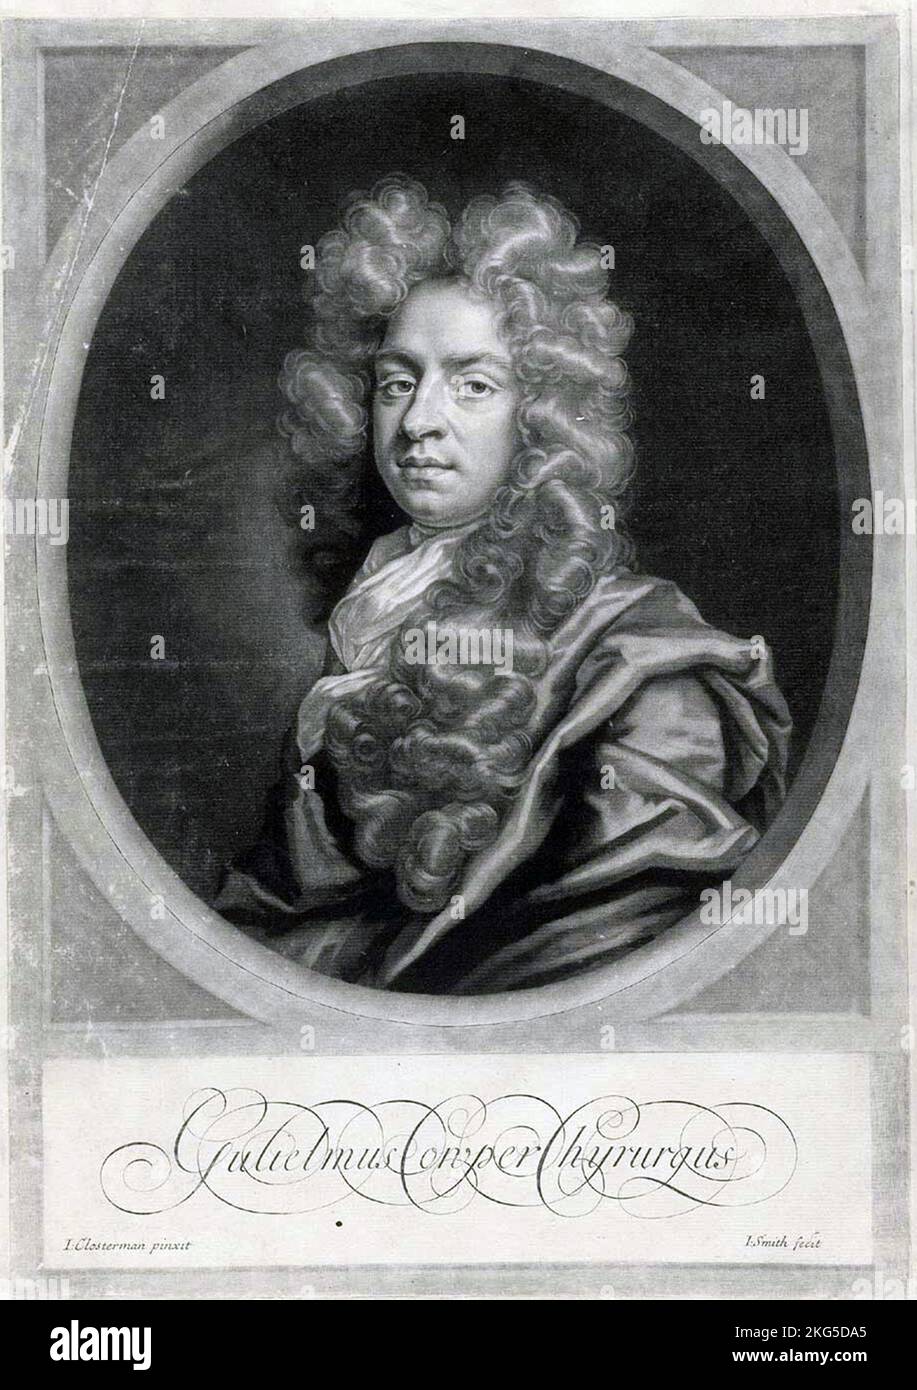 William Cowper (1666 – 1709) chirurgien et anatomiste anglais Banque D'Images